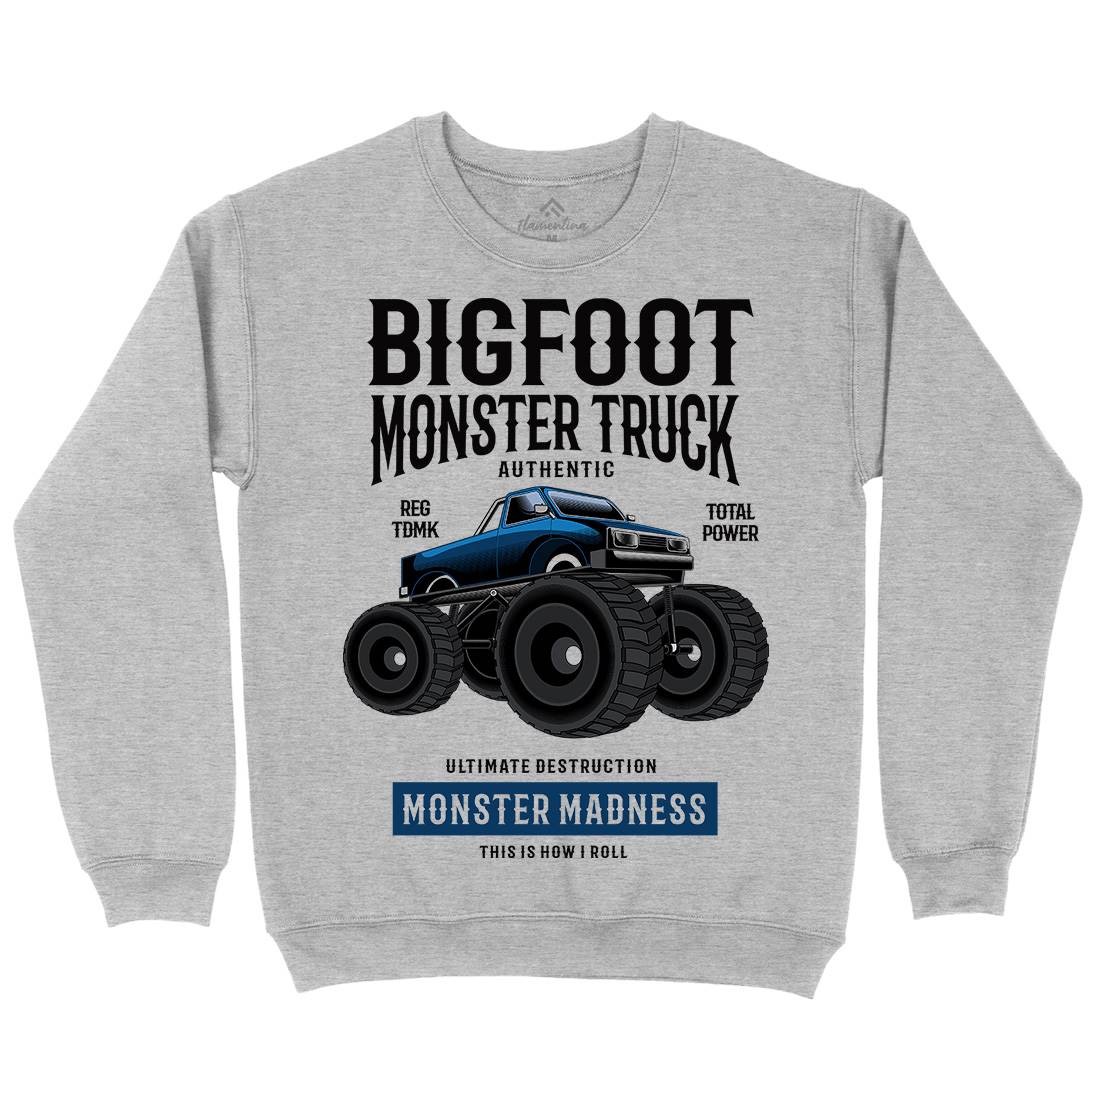 Bigfoot Kids Crew Neck Sweatshirt Vehicles C316